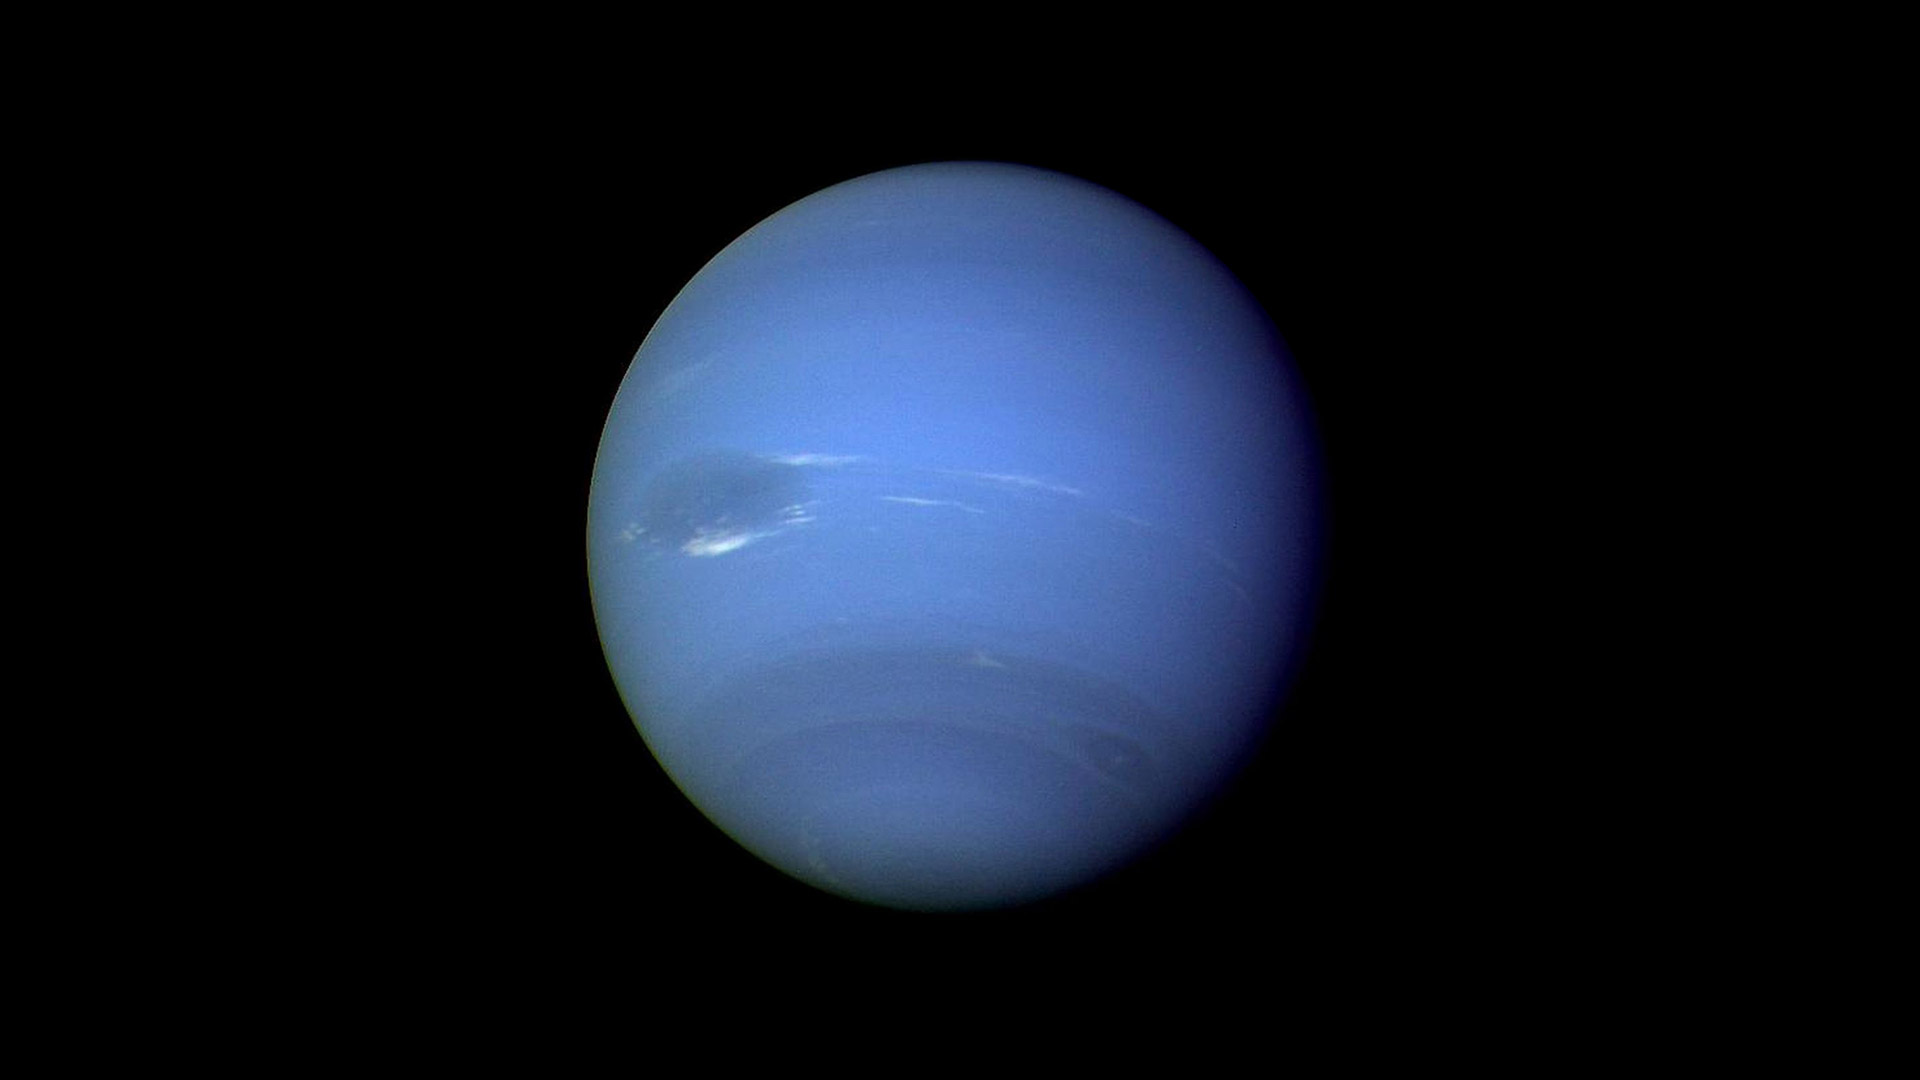 蔚蓝色的海王星 (© NASA/JPL)